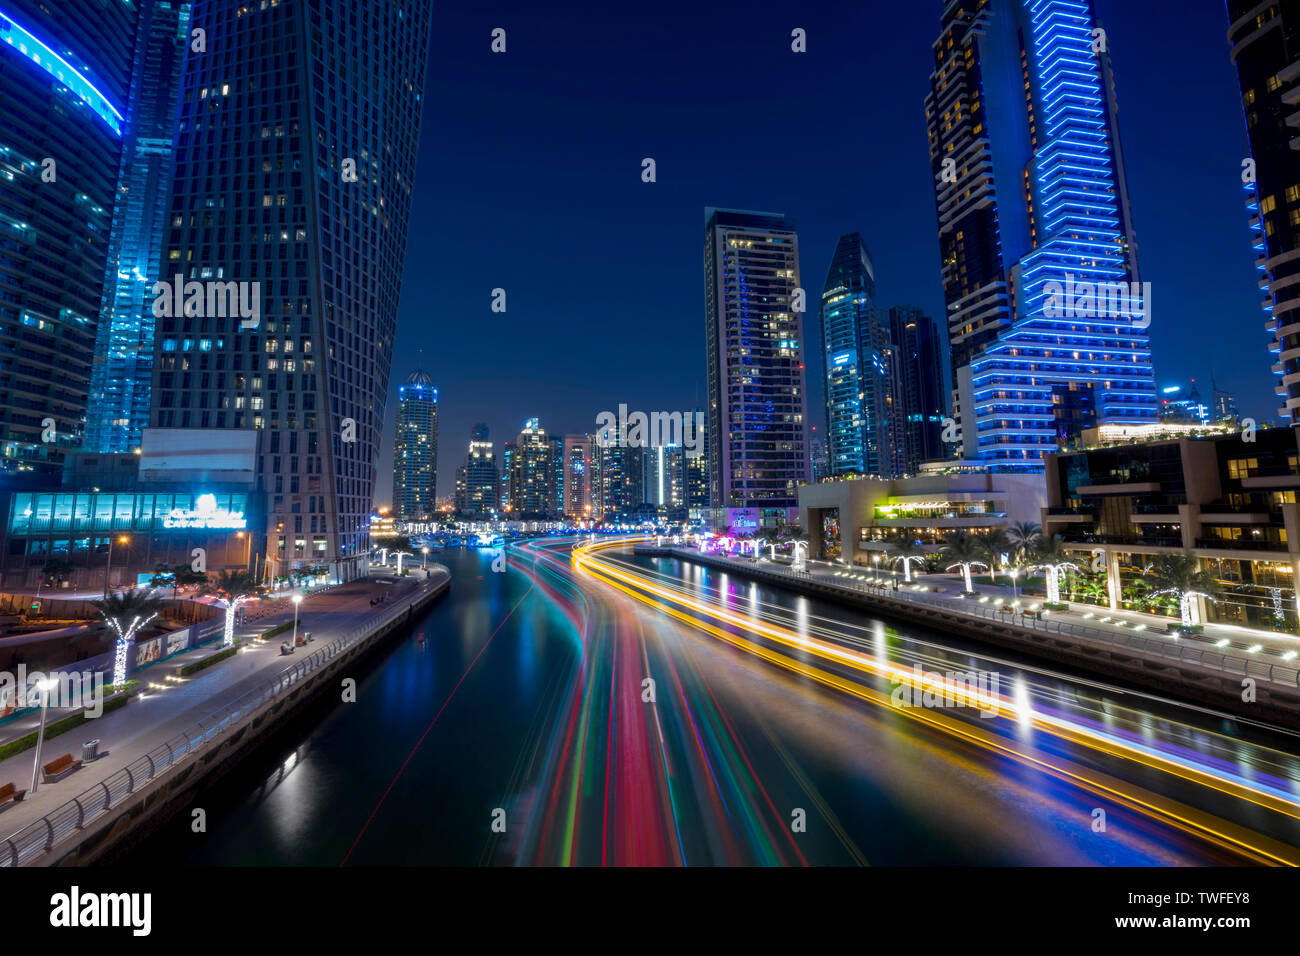 Percorsi di luce dal passaggio dhows migliorare l immagine di Dubai come una città del futuro nella Marina di Dubai. Foto Stock